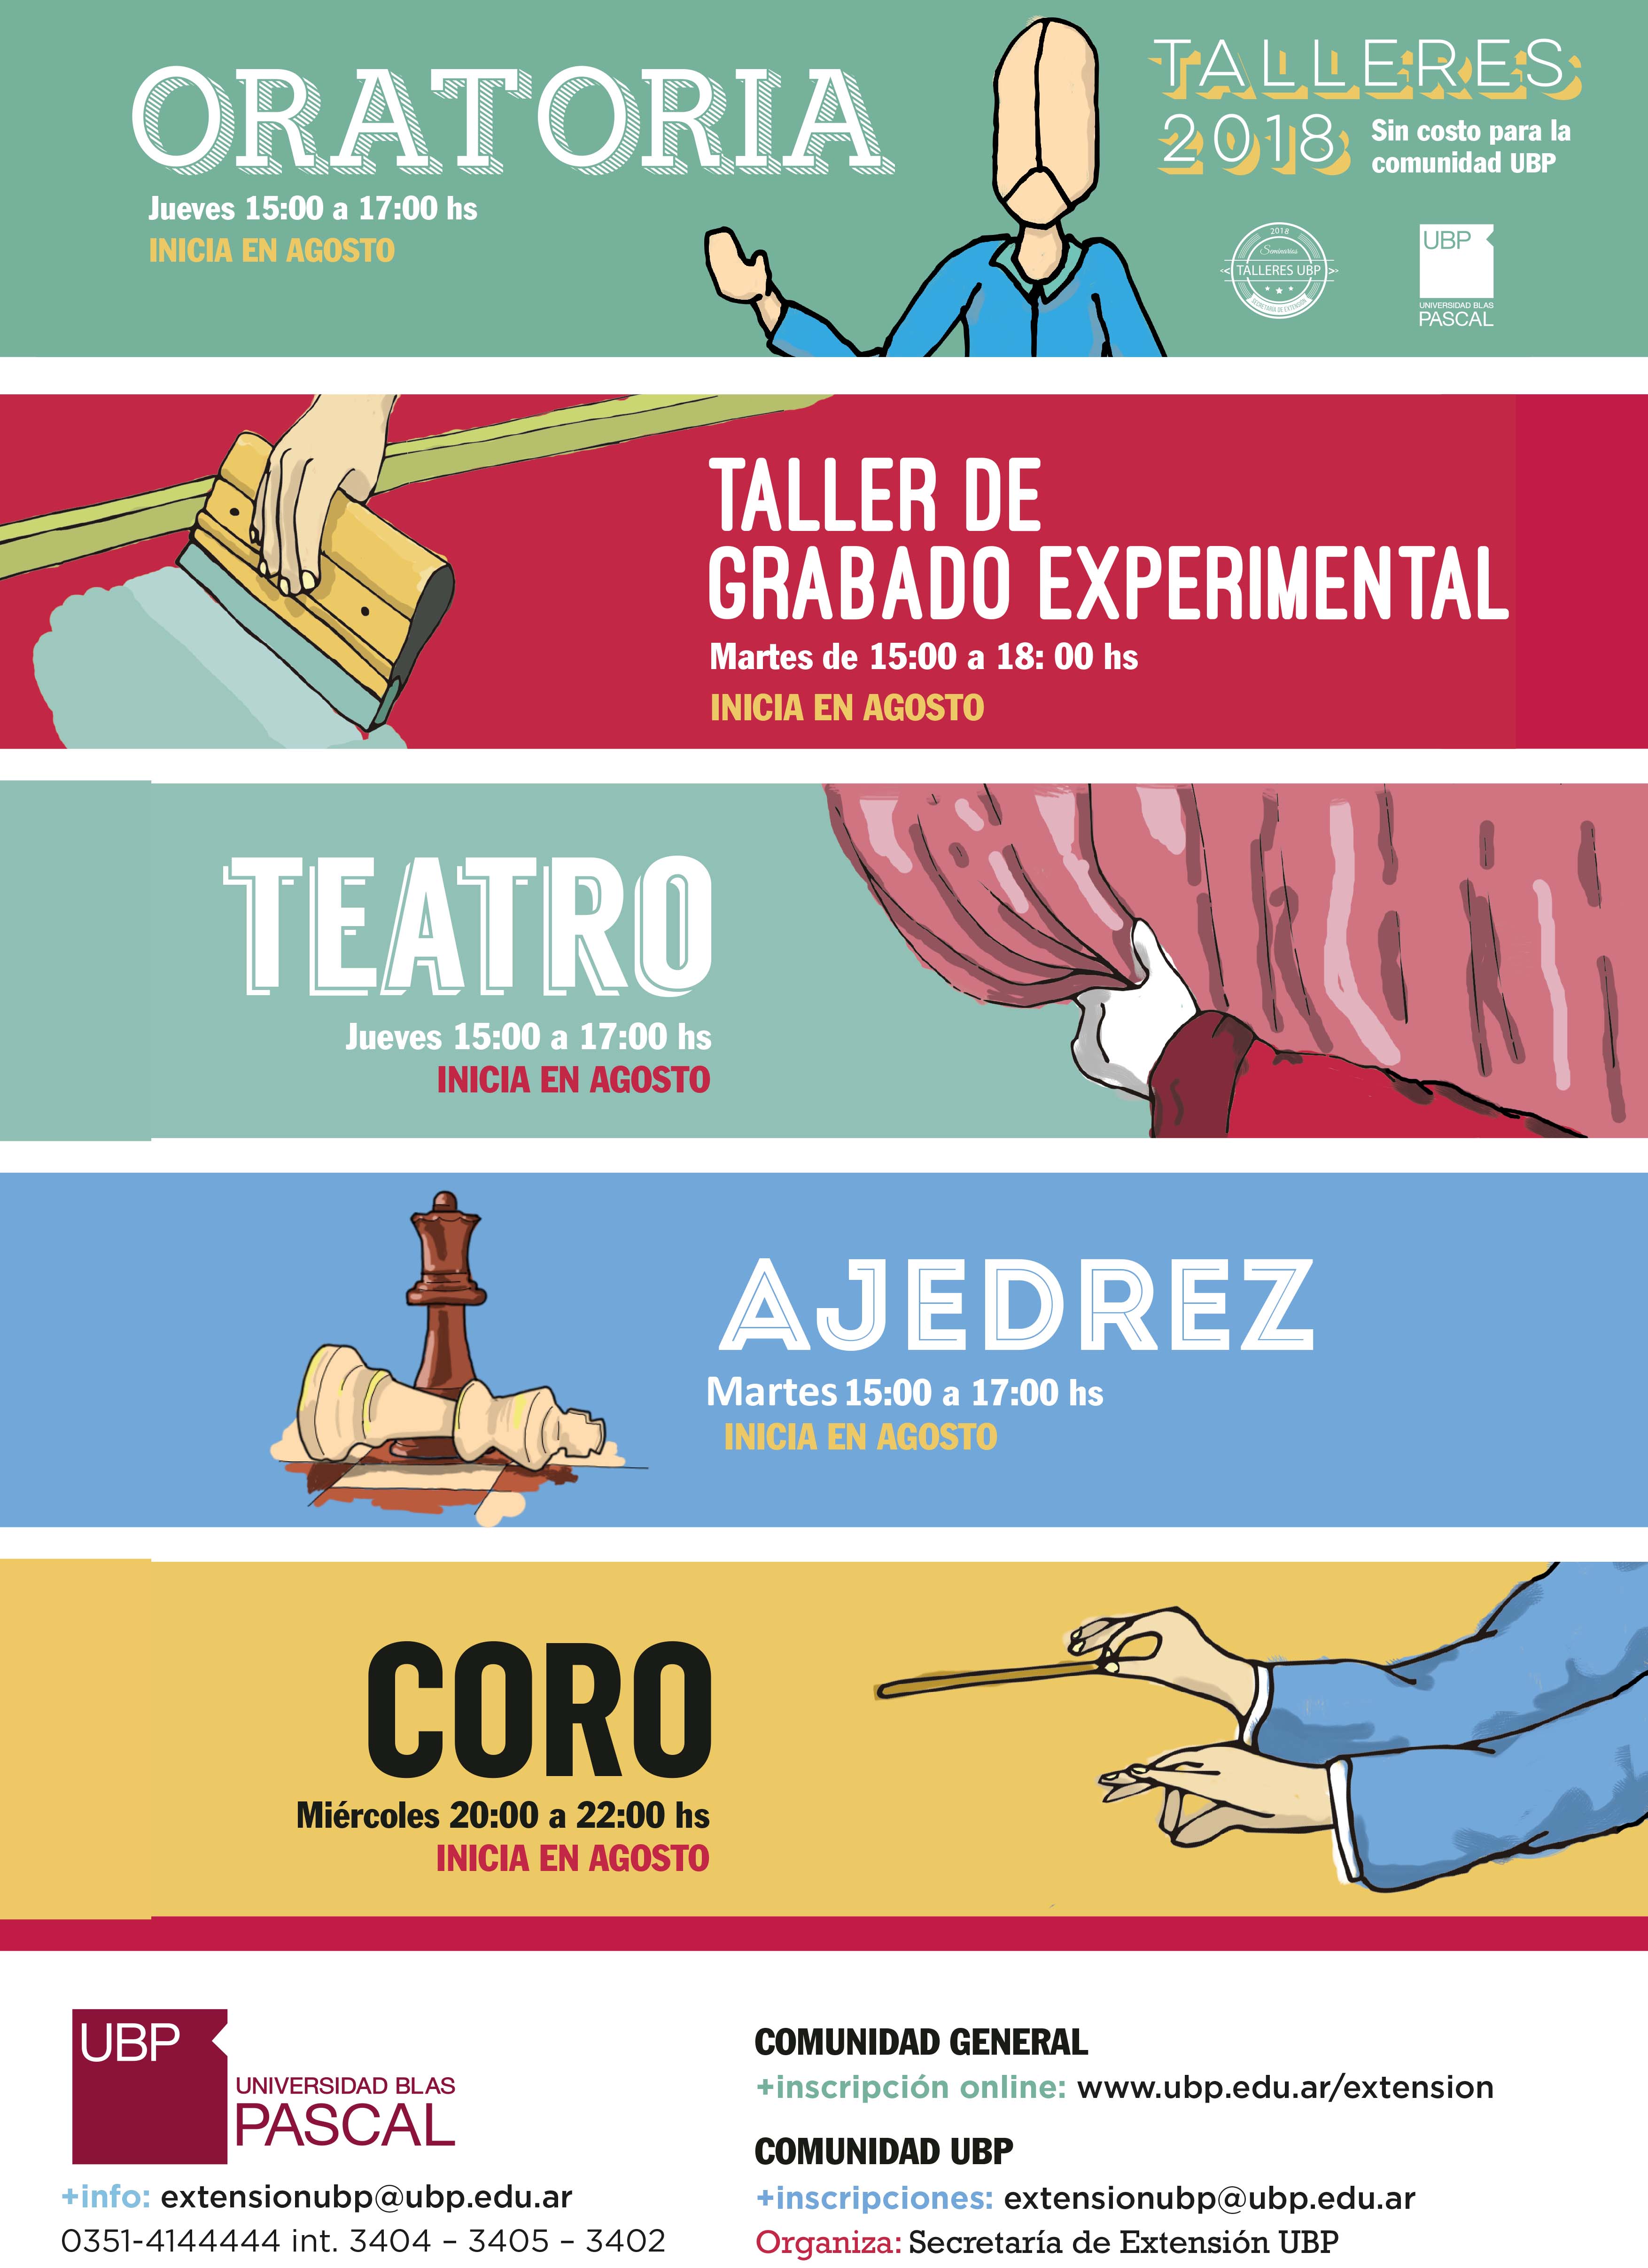 Talleres 2018: Oratoria, Grabado, Teatro, Ajedrez y Coro